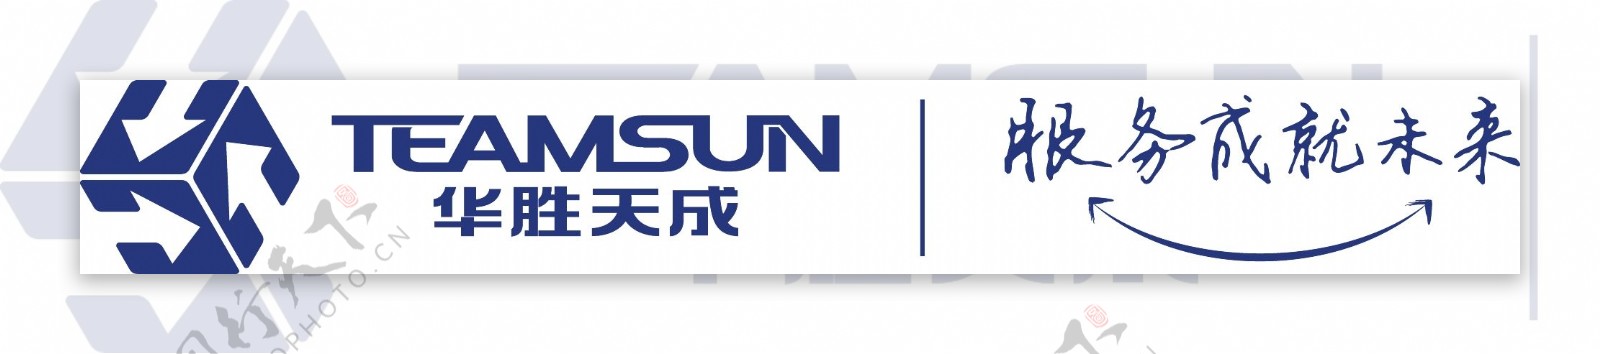 华胜天成企业logo图片